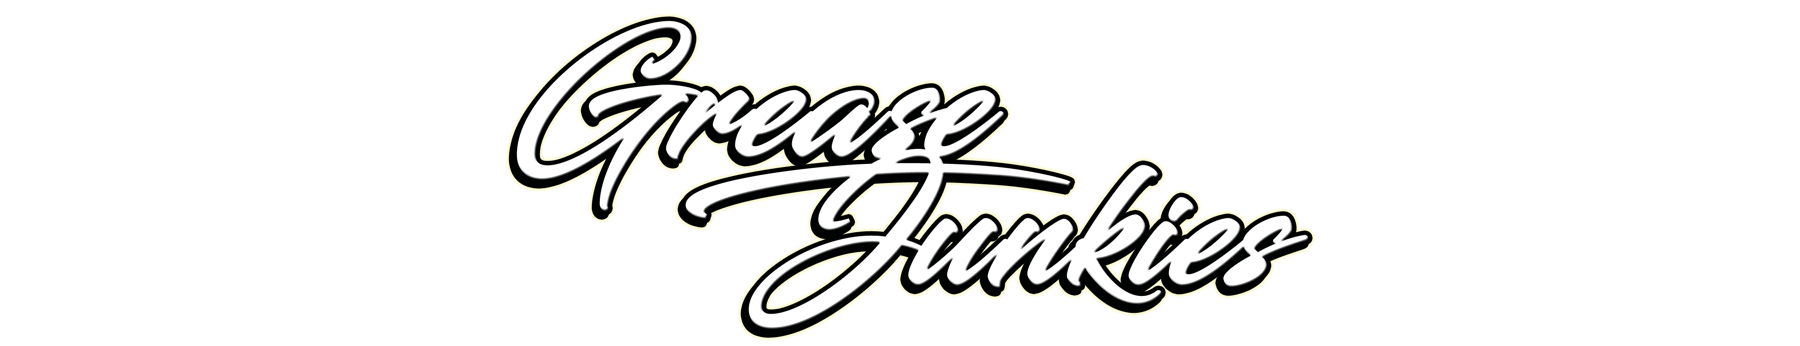 Grease Junkies Store